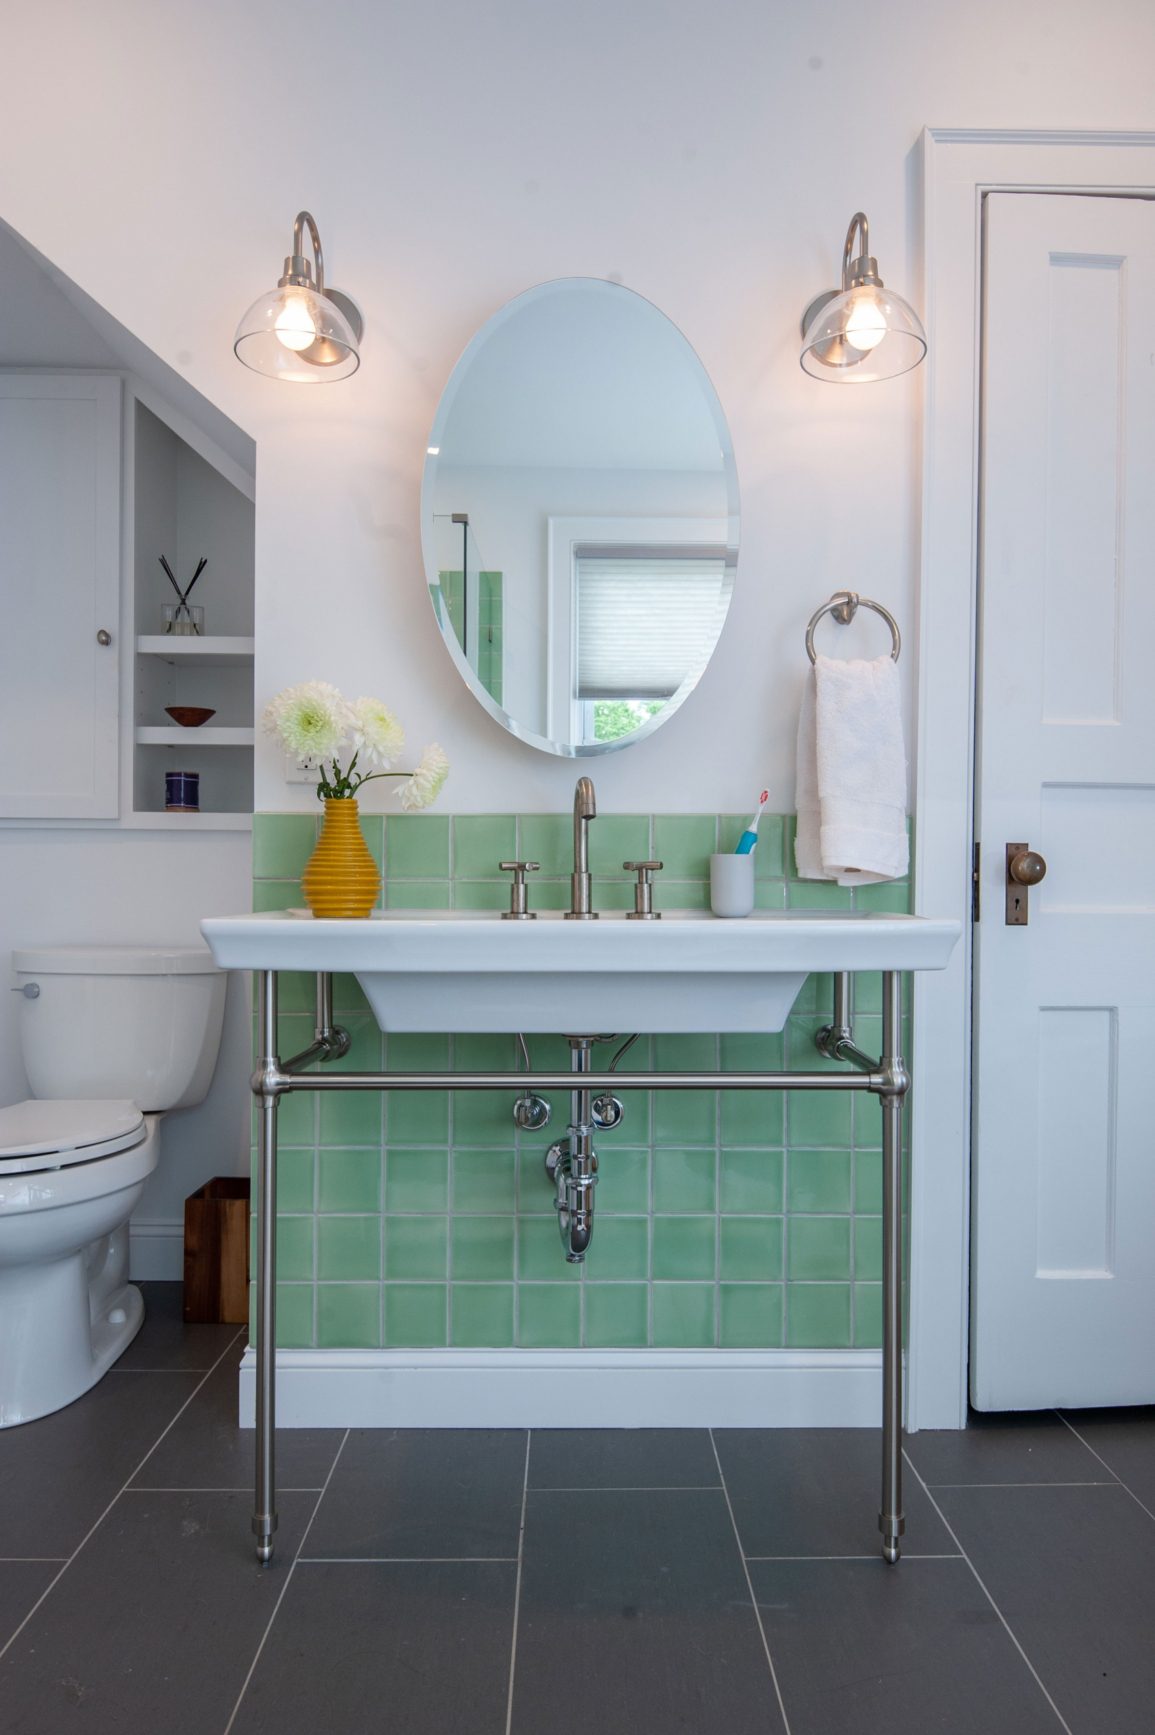 Green tiled bathroom vanity